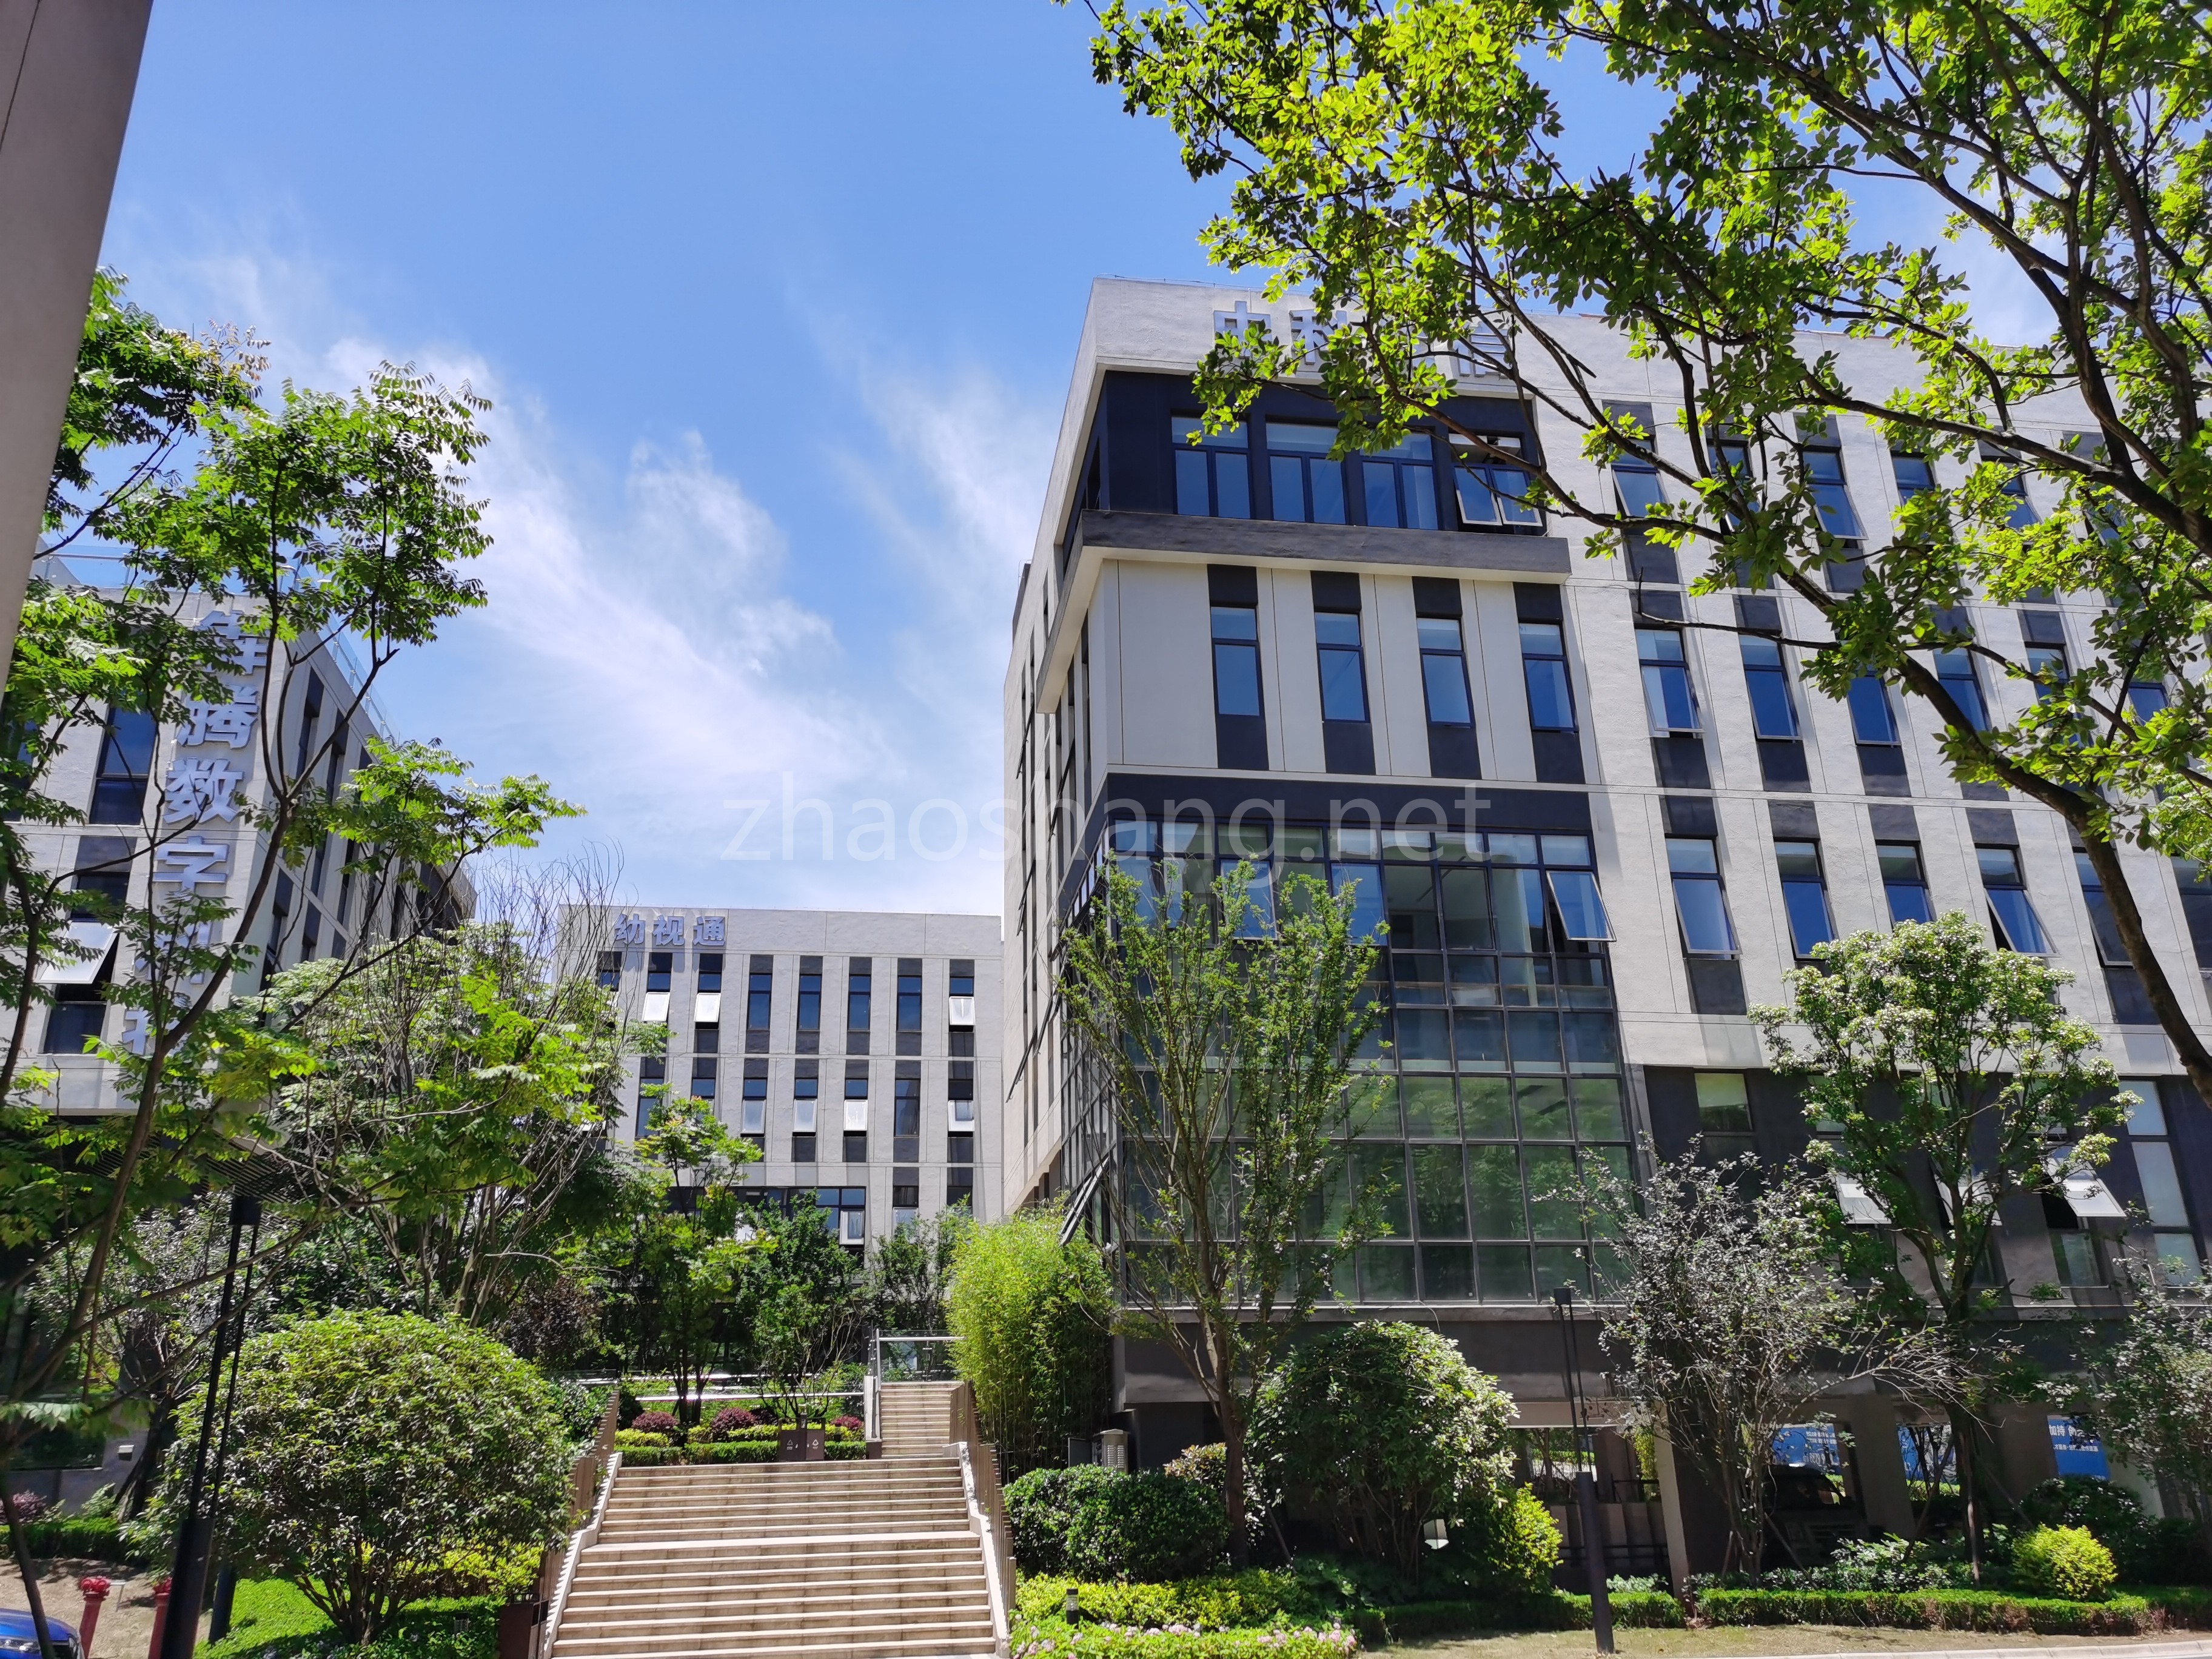 岳麓区湘江智谷人工智能科技新城独栋多层研发/生产/办公楼出售